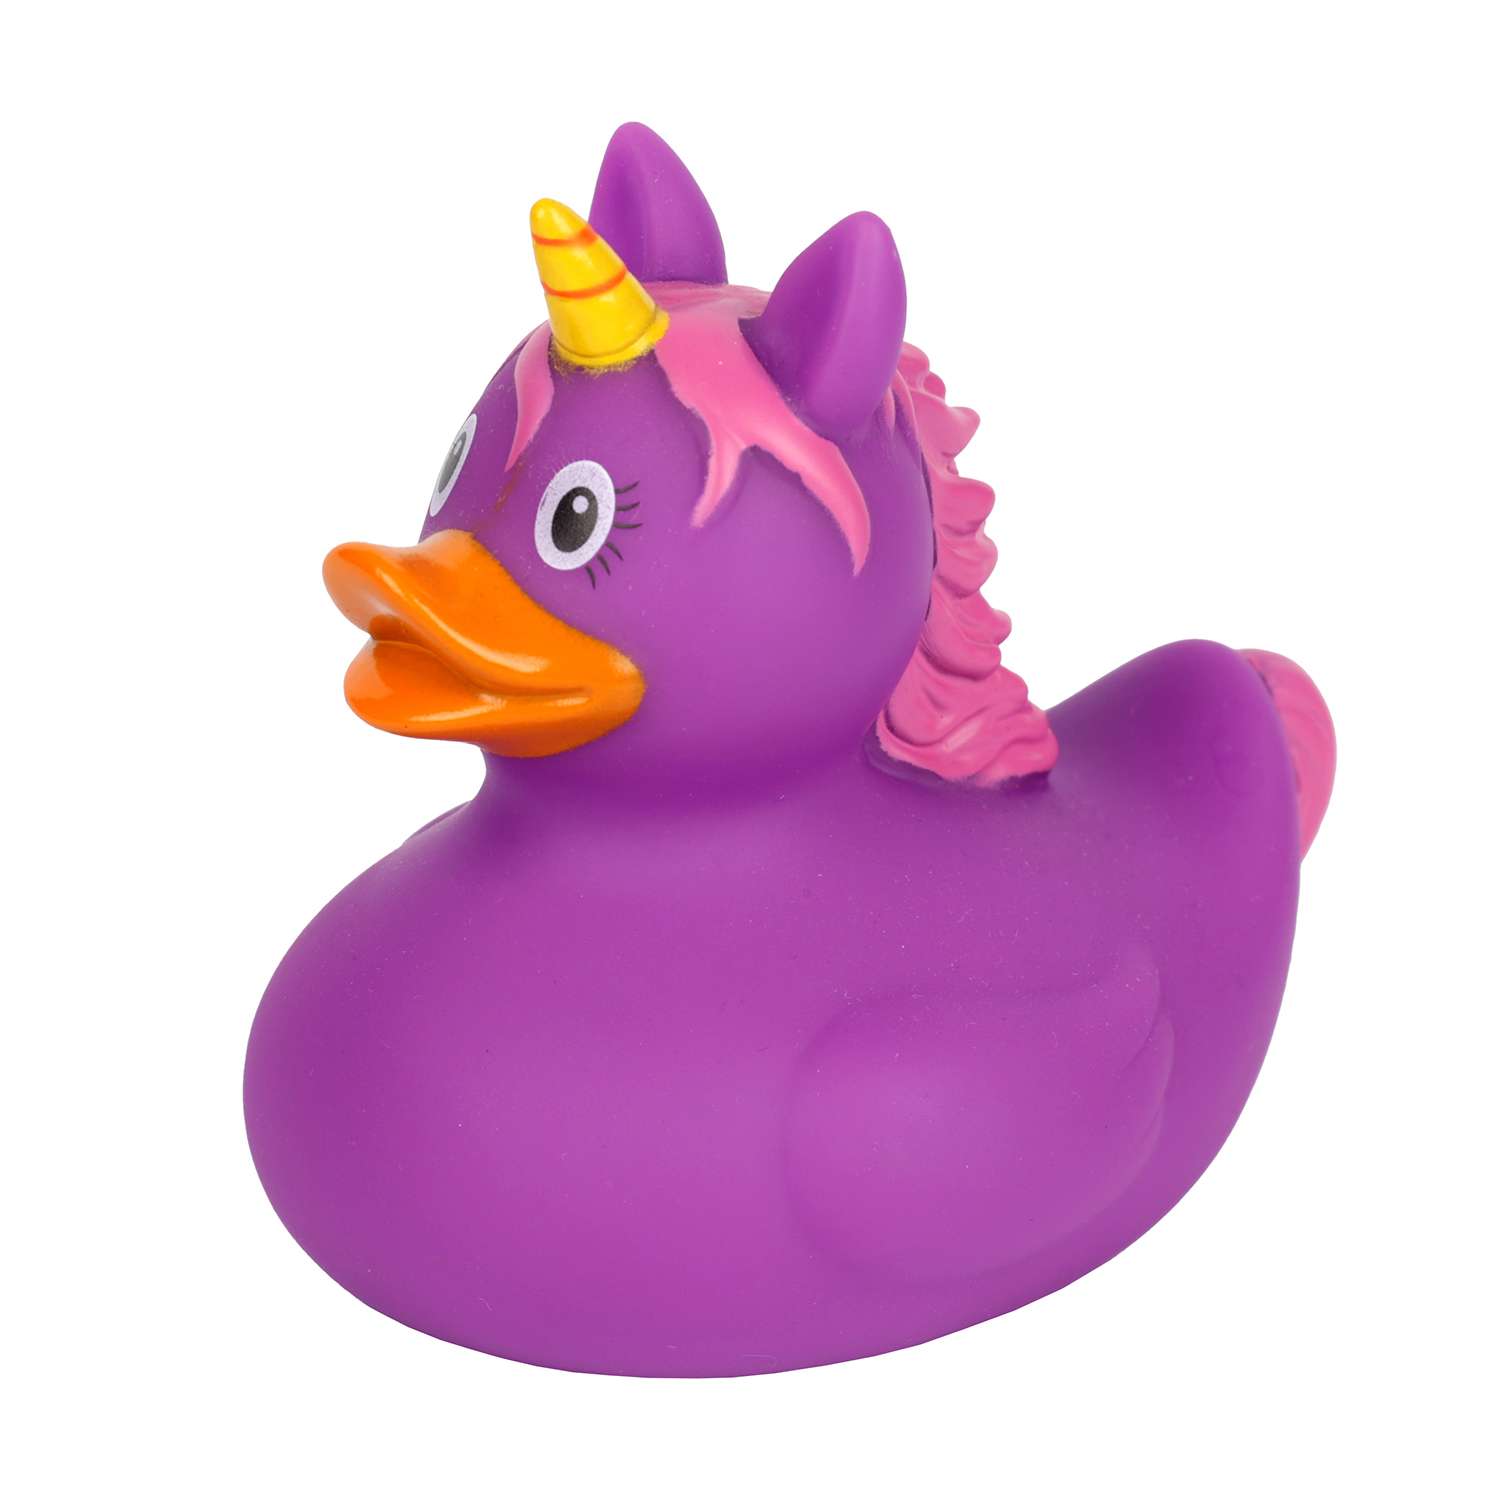 Игрушка для ванны сувенир Funny ducks Единорог пурпурный уточка 2090 - фото 1